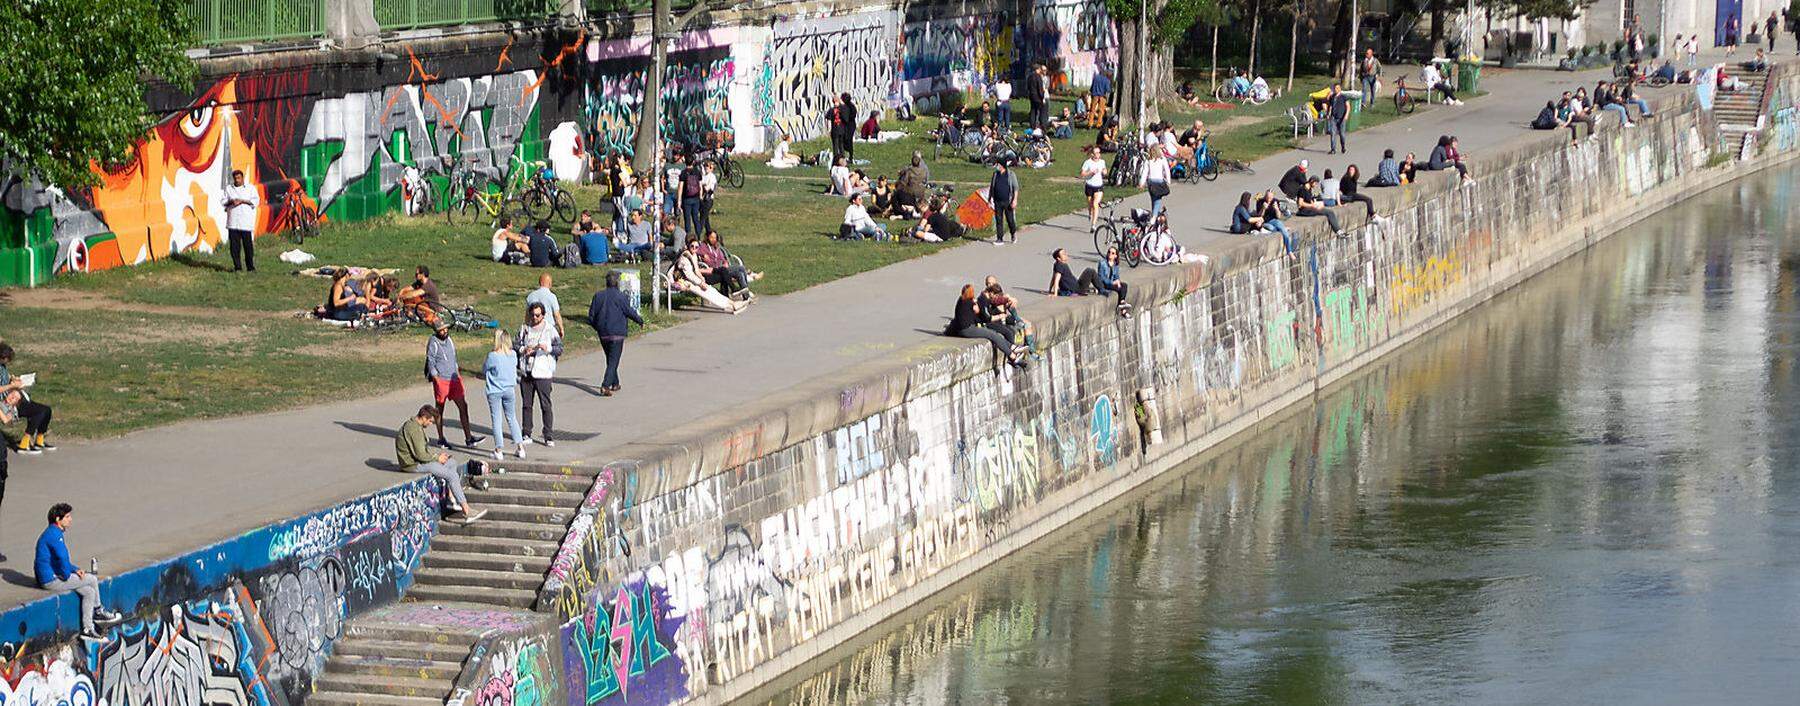 Zuletzt wurde das gesellige Getümmel - nicht nur wie hier am Wiener Donaukanal - immer dichter. (Aufnahme vom  7. Mai)